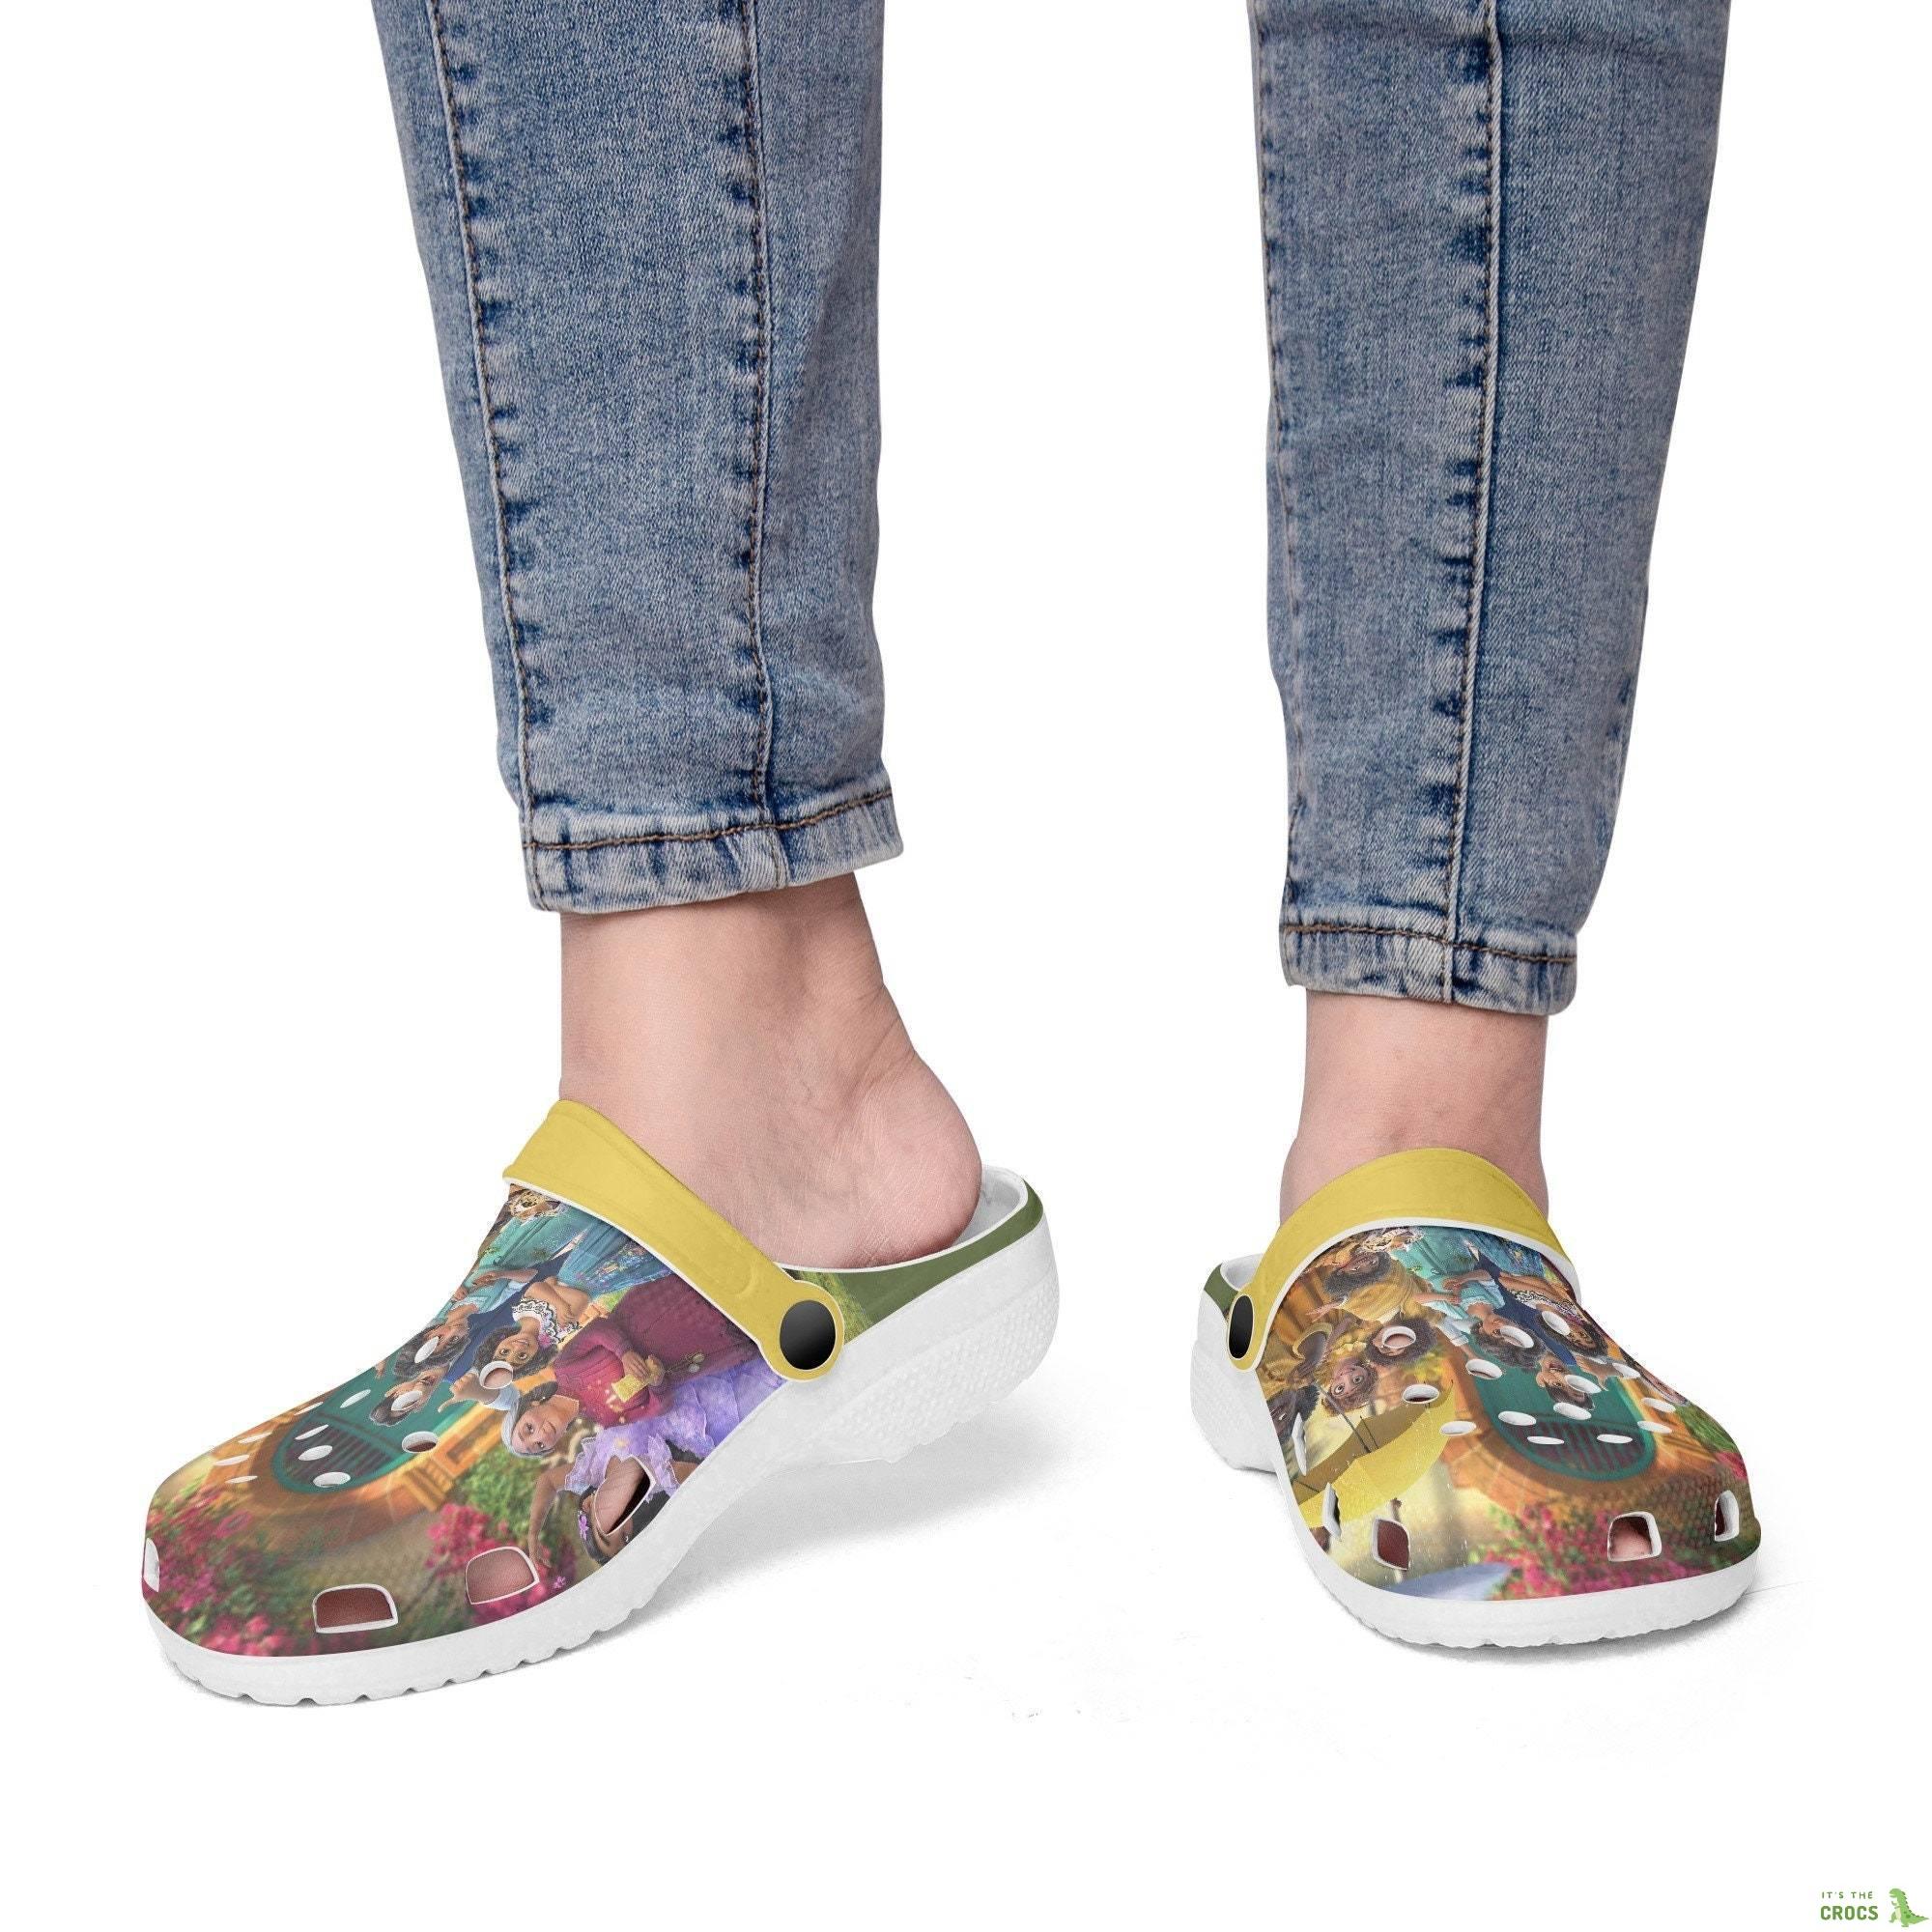 Encanto Clogs, Looks Like Crocs Shoes, Women And Kids